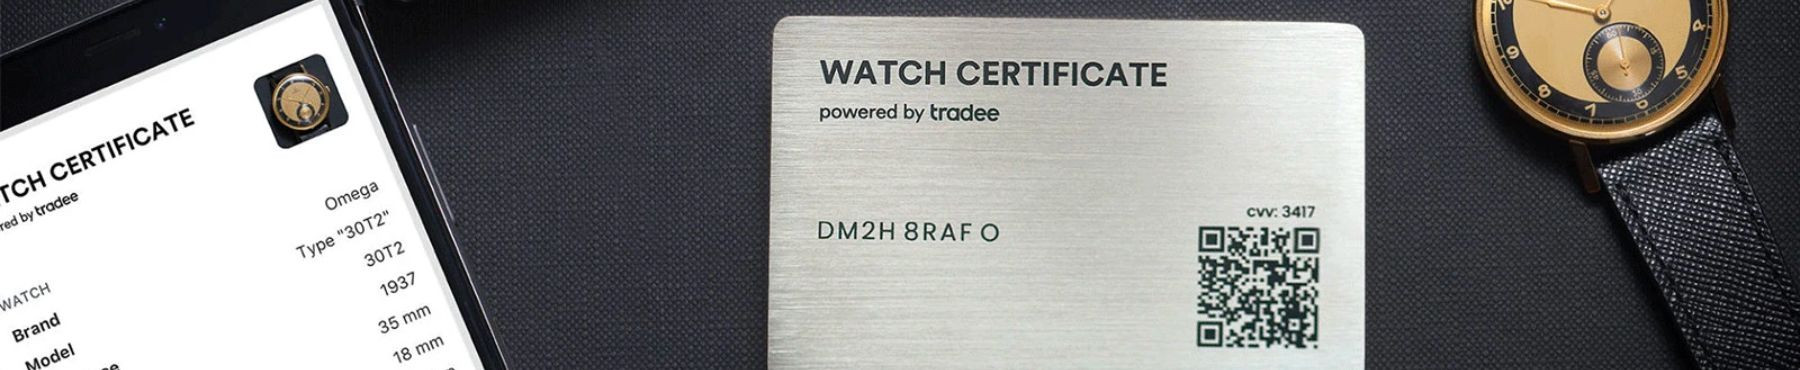 Montres livrées avec un Watch Certificate